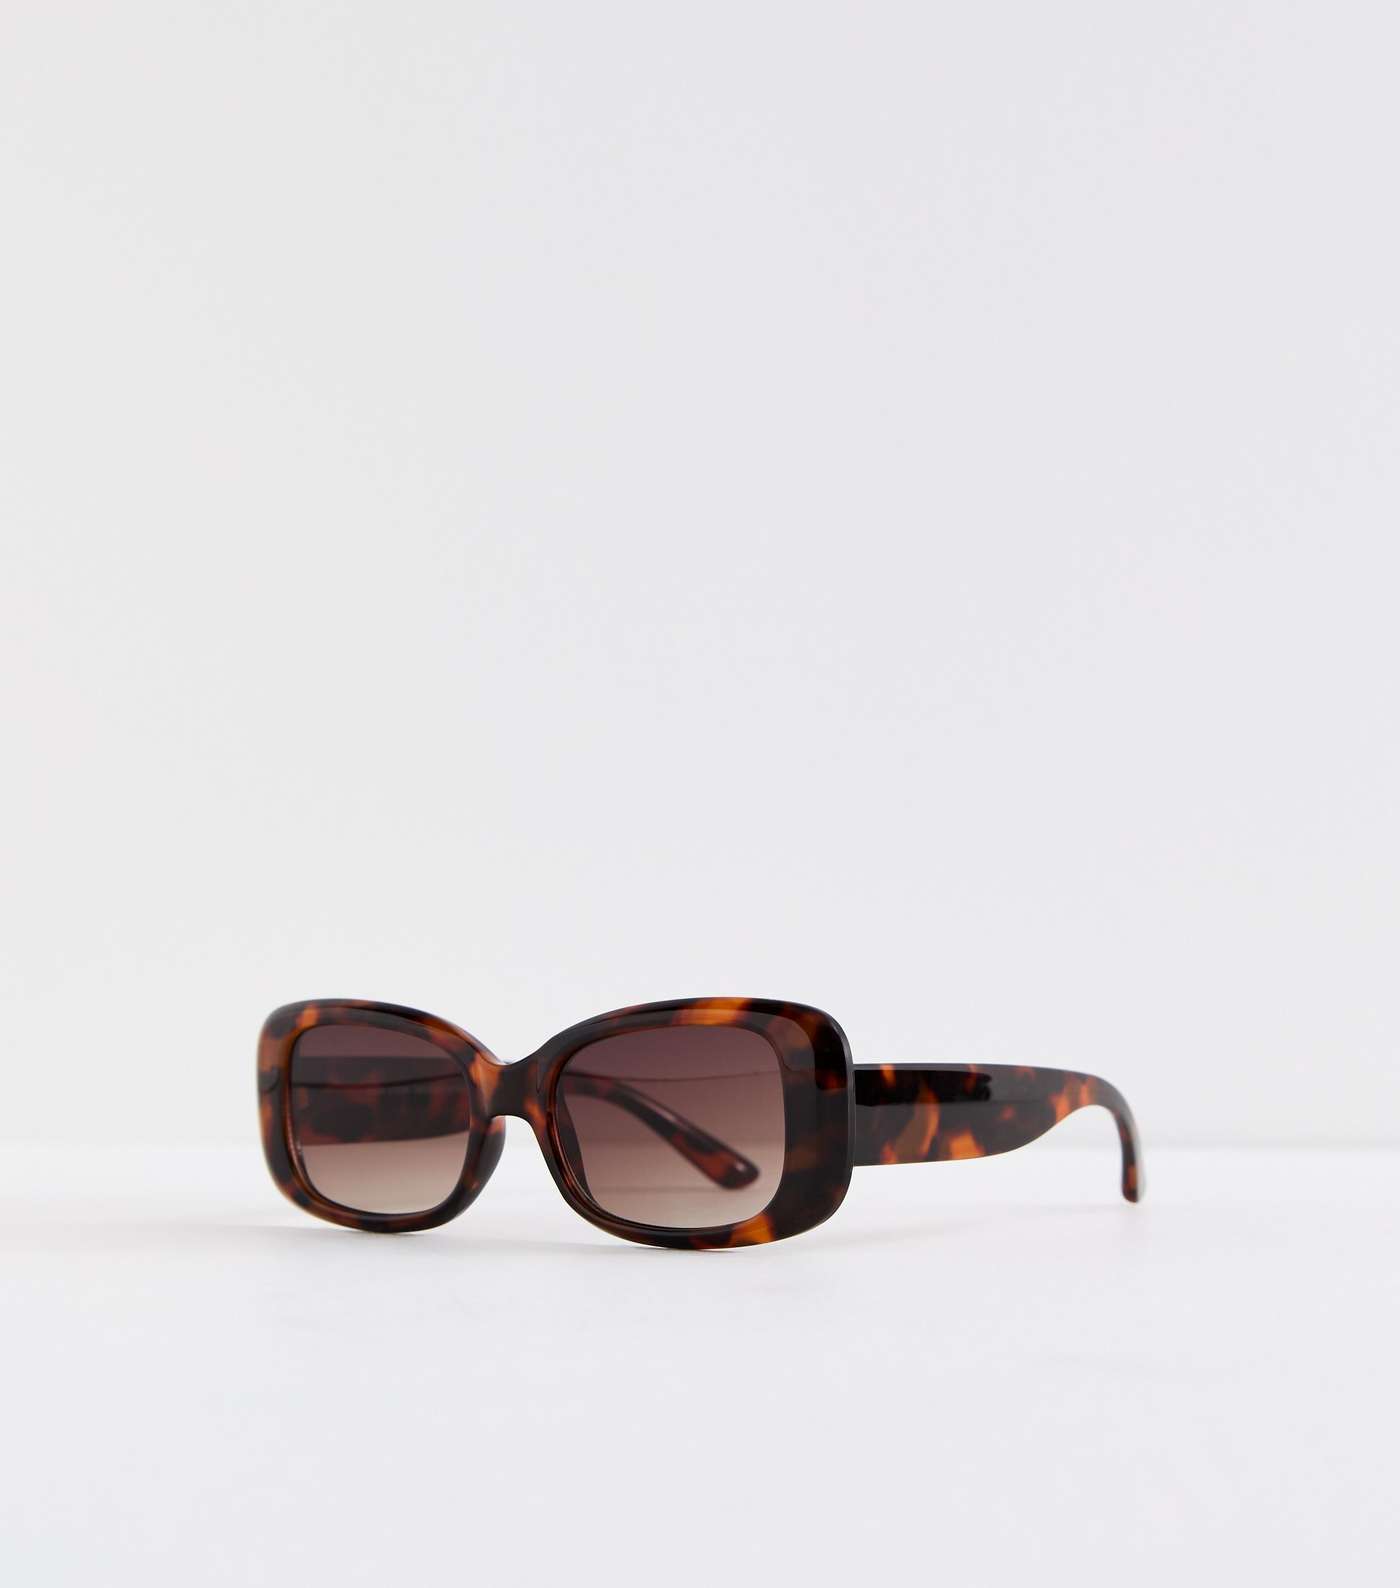 Dark Brown Tortoiseshell Effect Rectangle Frame Sunglasses Image 2